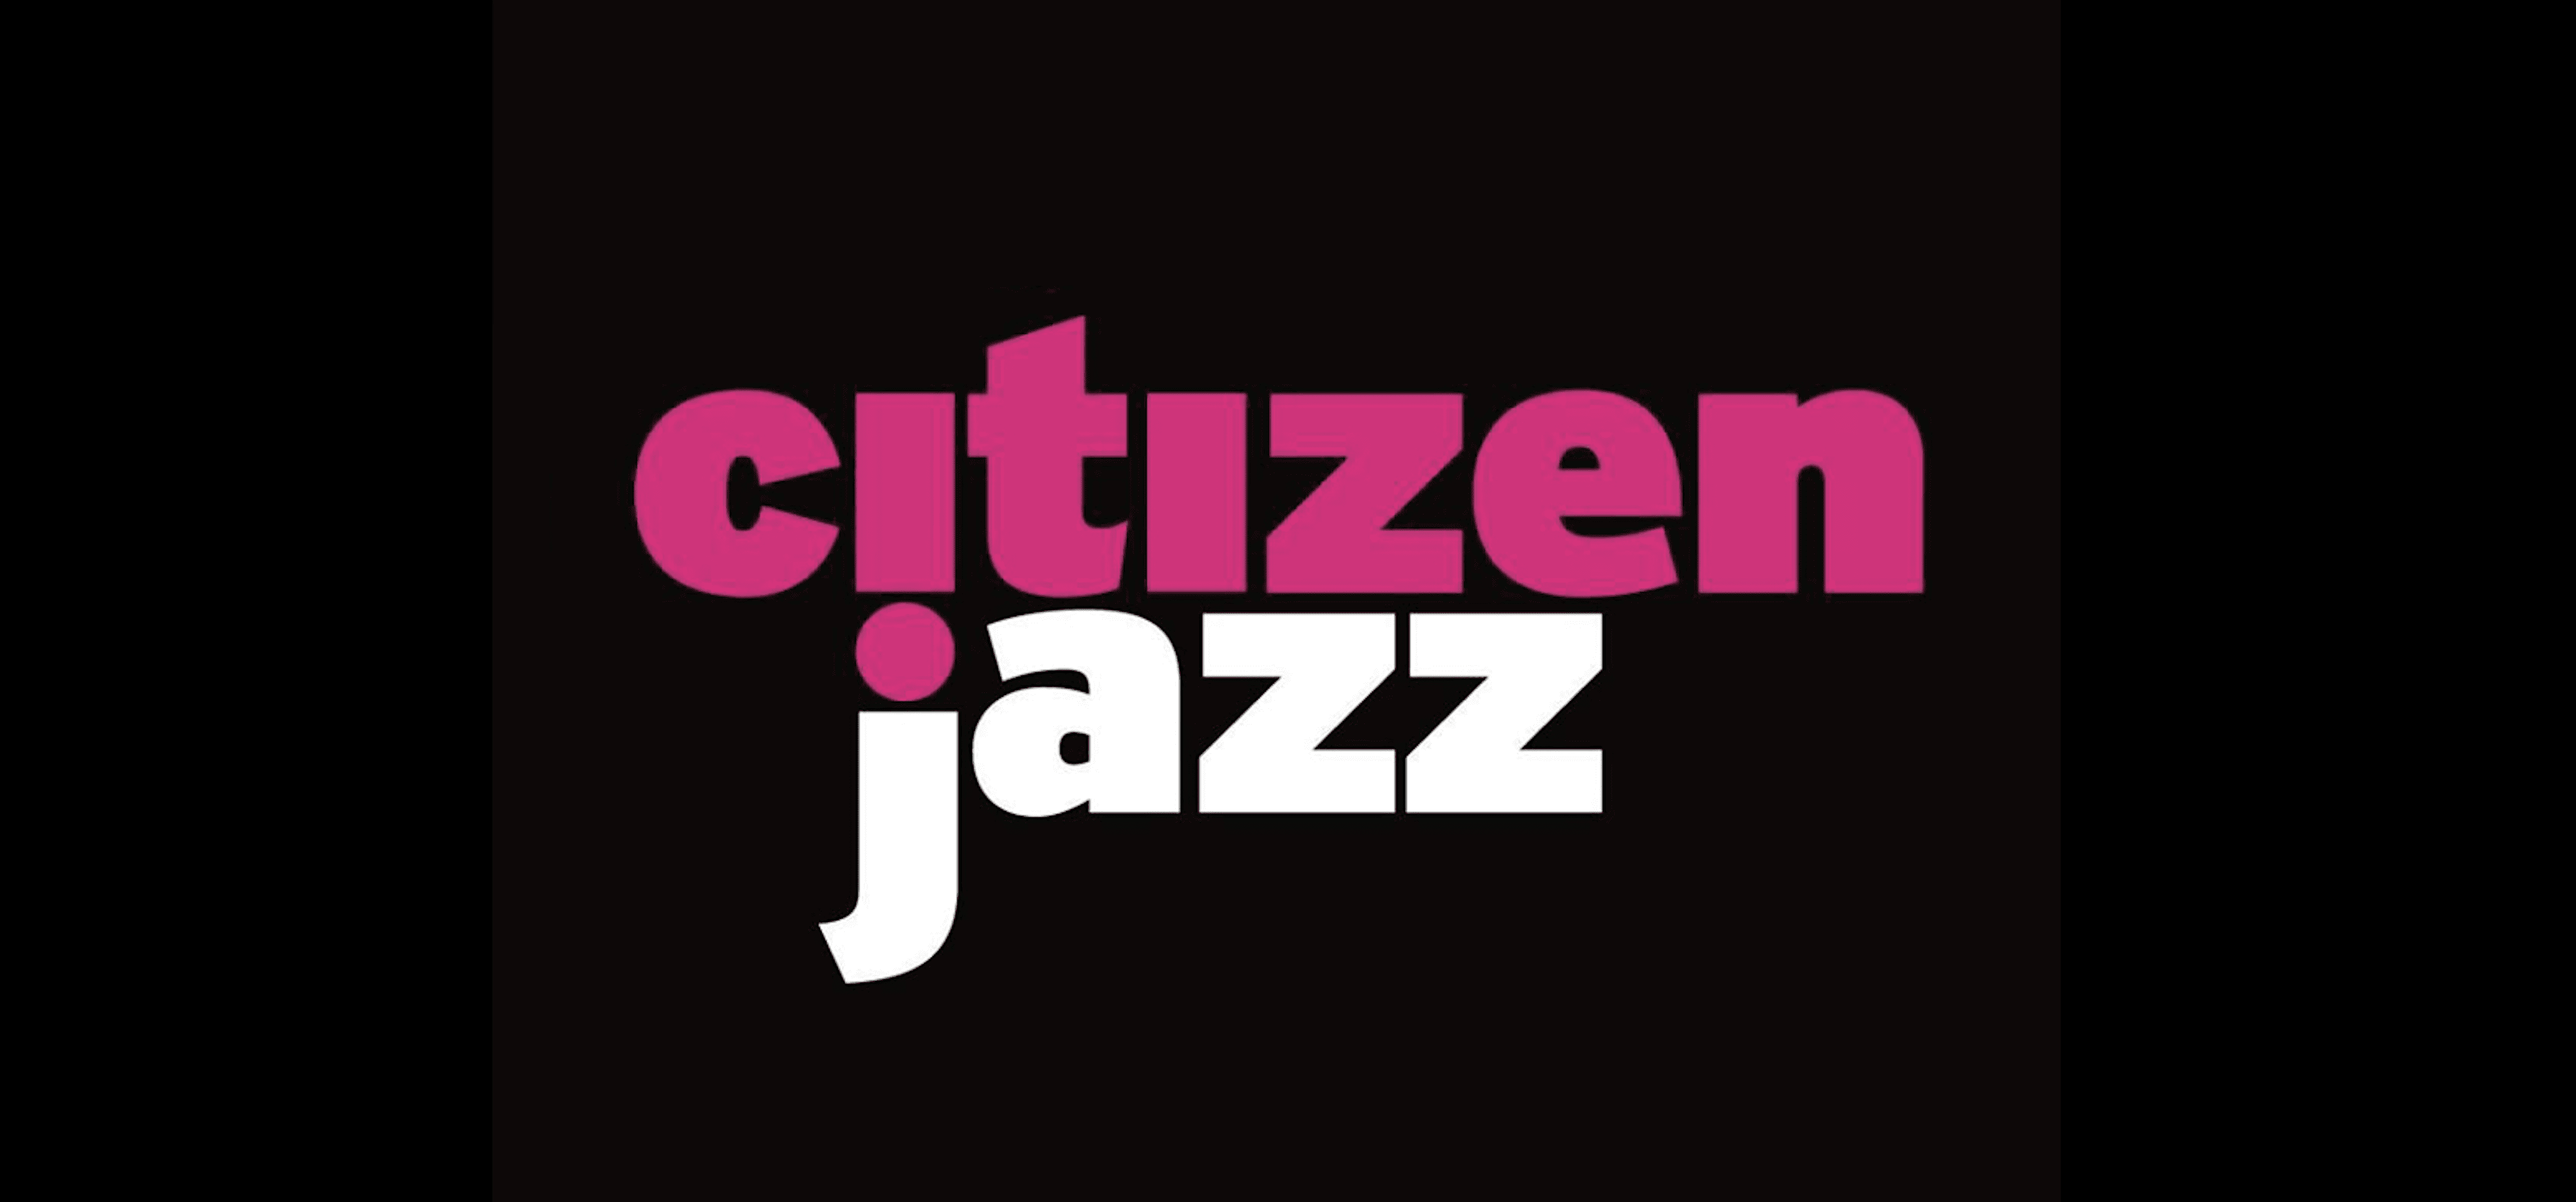 Citizen jazz